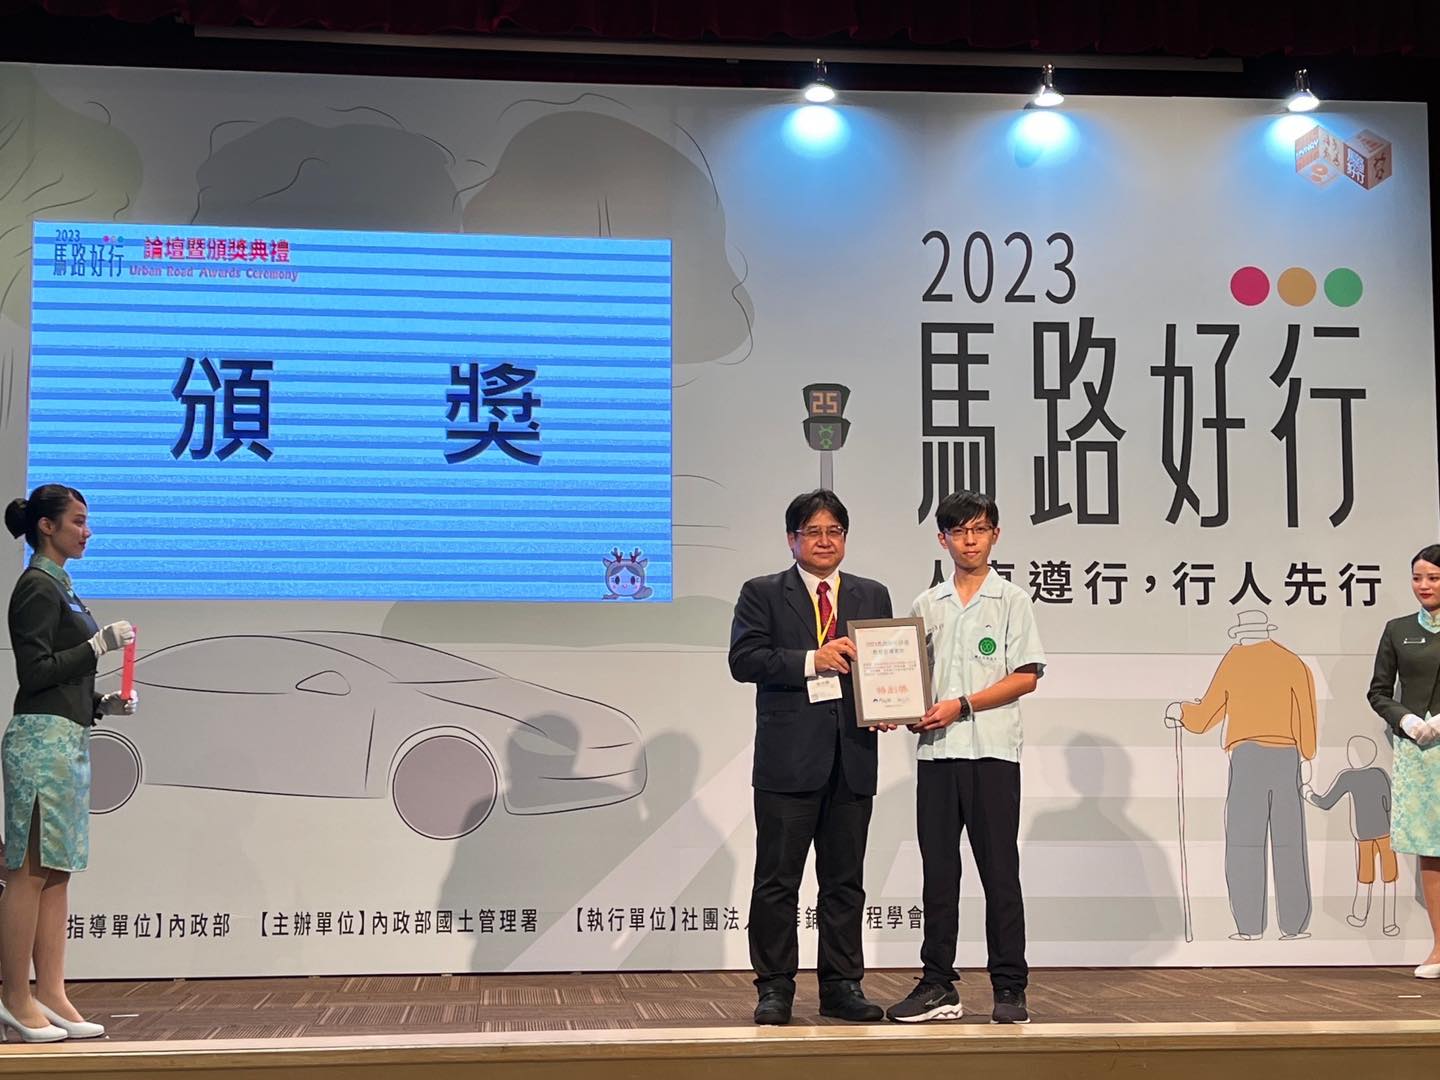 恭賀！本校劉翁靖同學榮獲「2023馬路好行評選」特別獎！